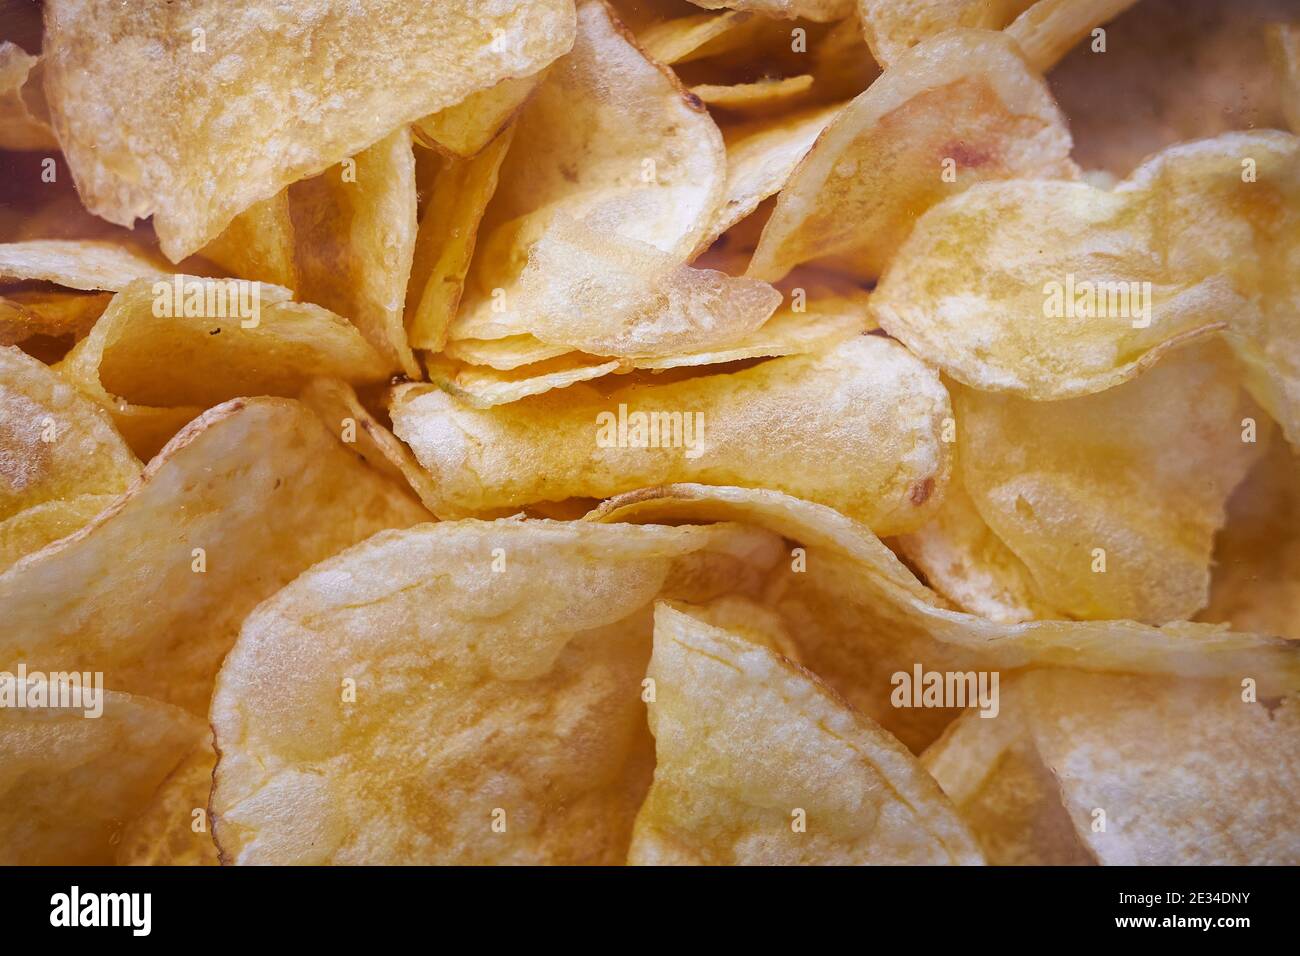 Hintergrund mit pommes frites aus der Nähe gesehen Stockfoto